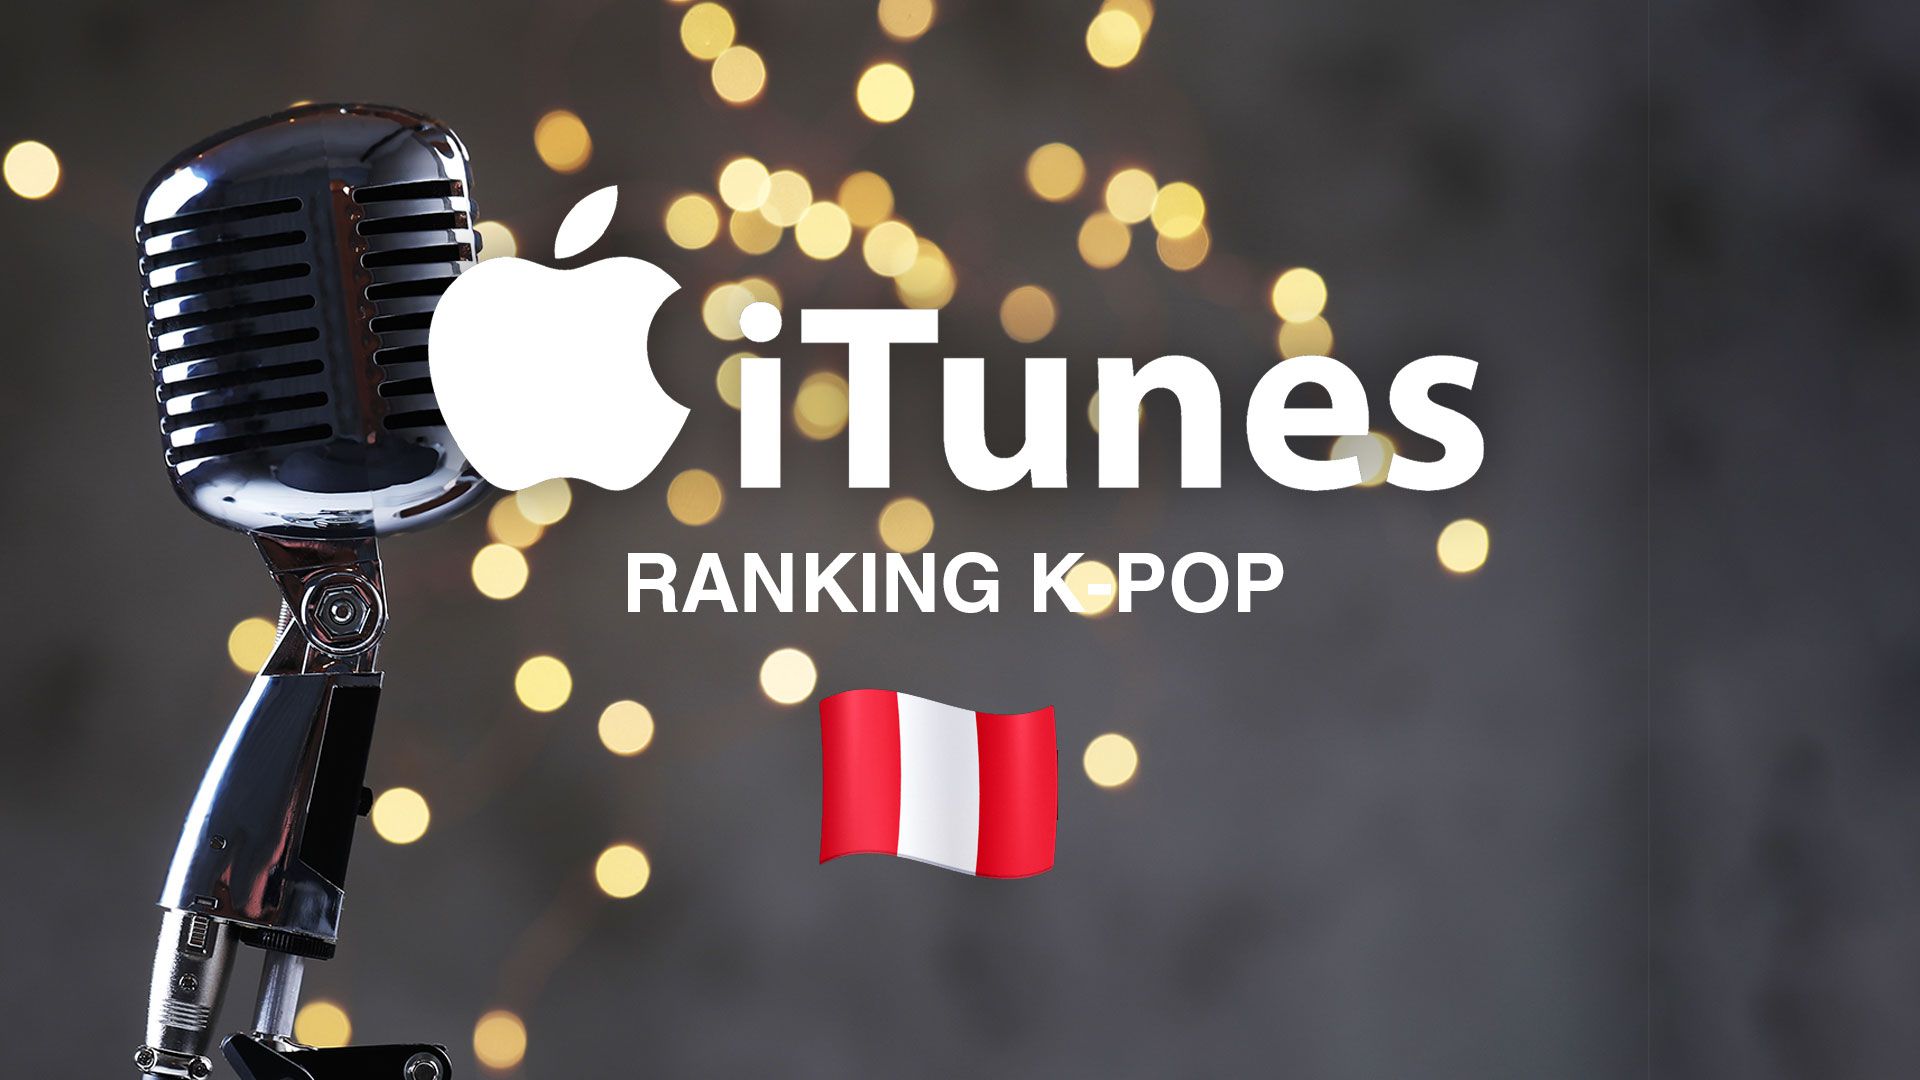 K-pop en Perú: las 10 canciones que dominan en iTunes